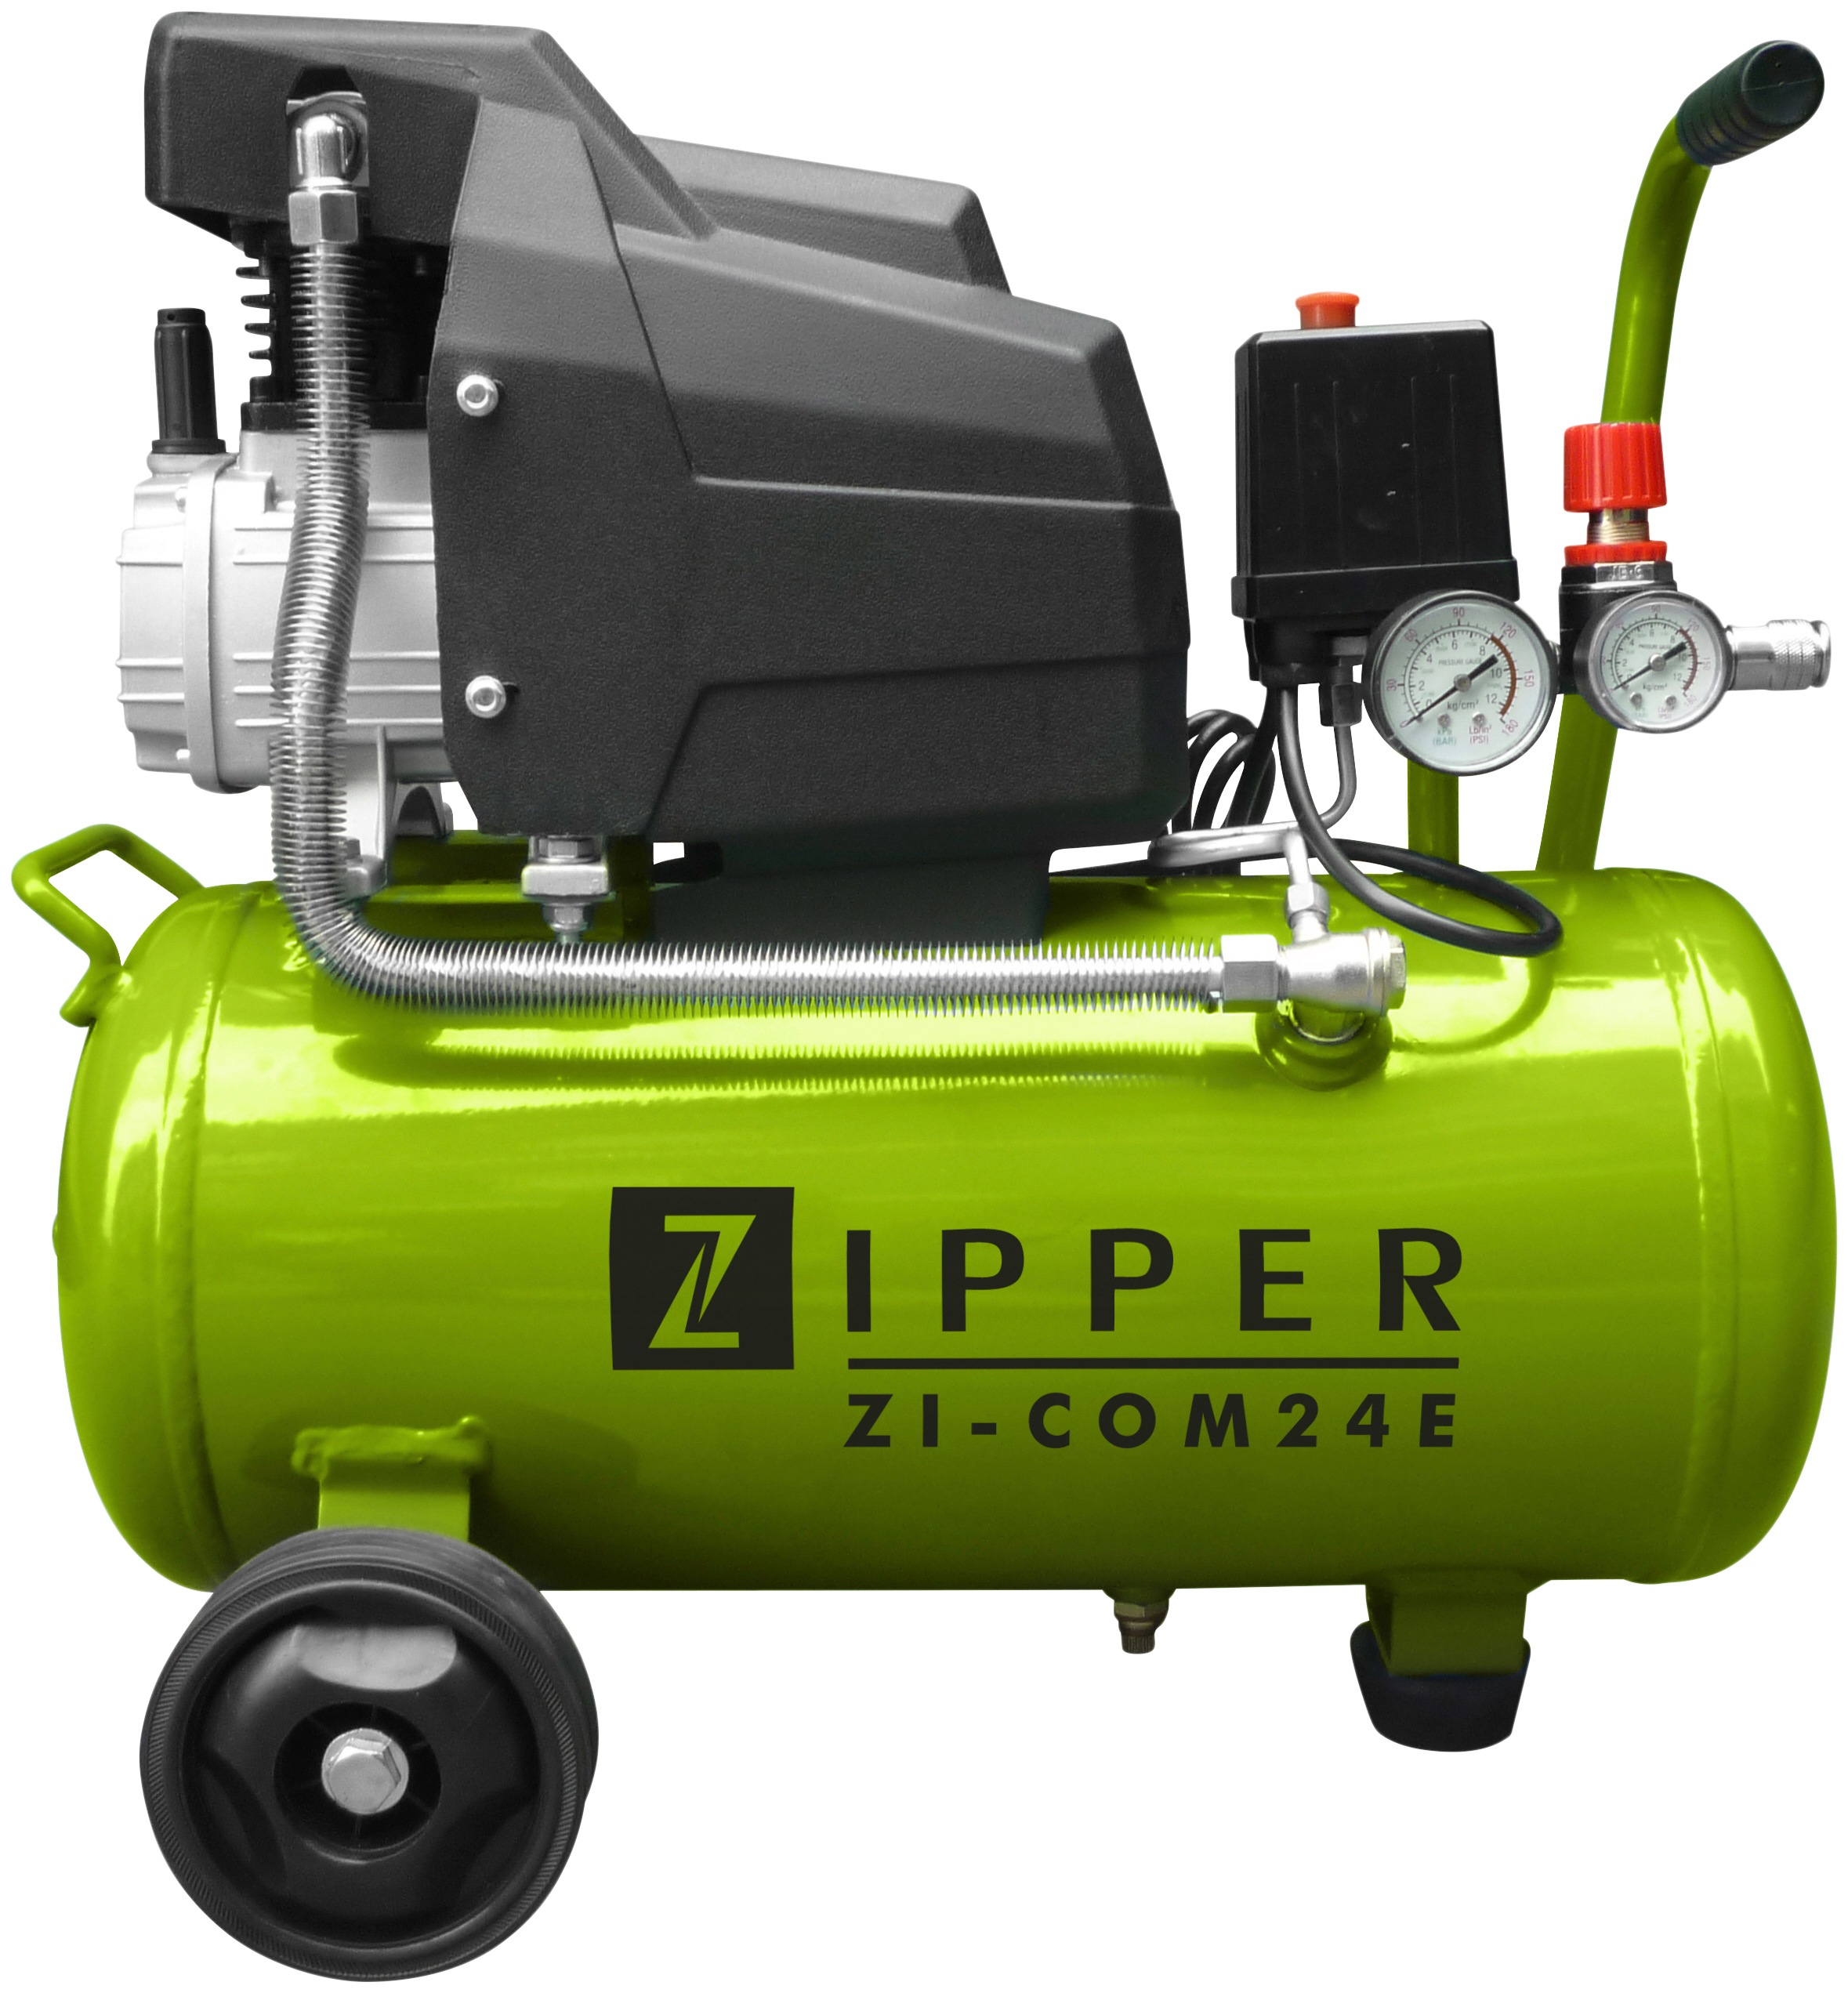 ZIPPER Maschinen Online-Shop » Werkzeuge | Baugeräte BAUR 